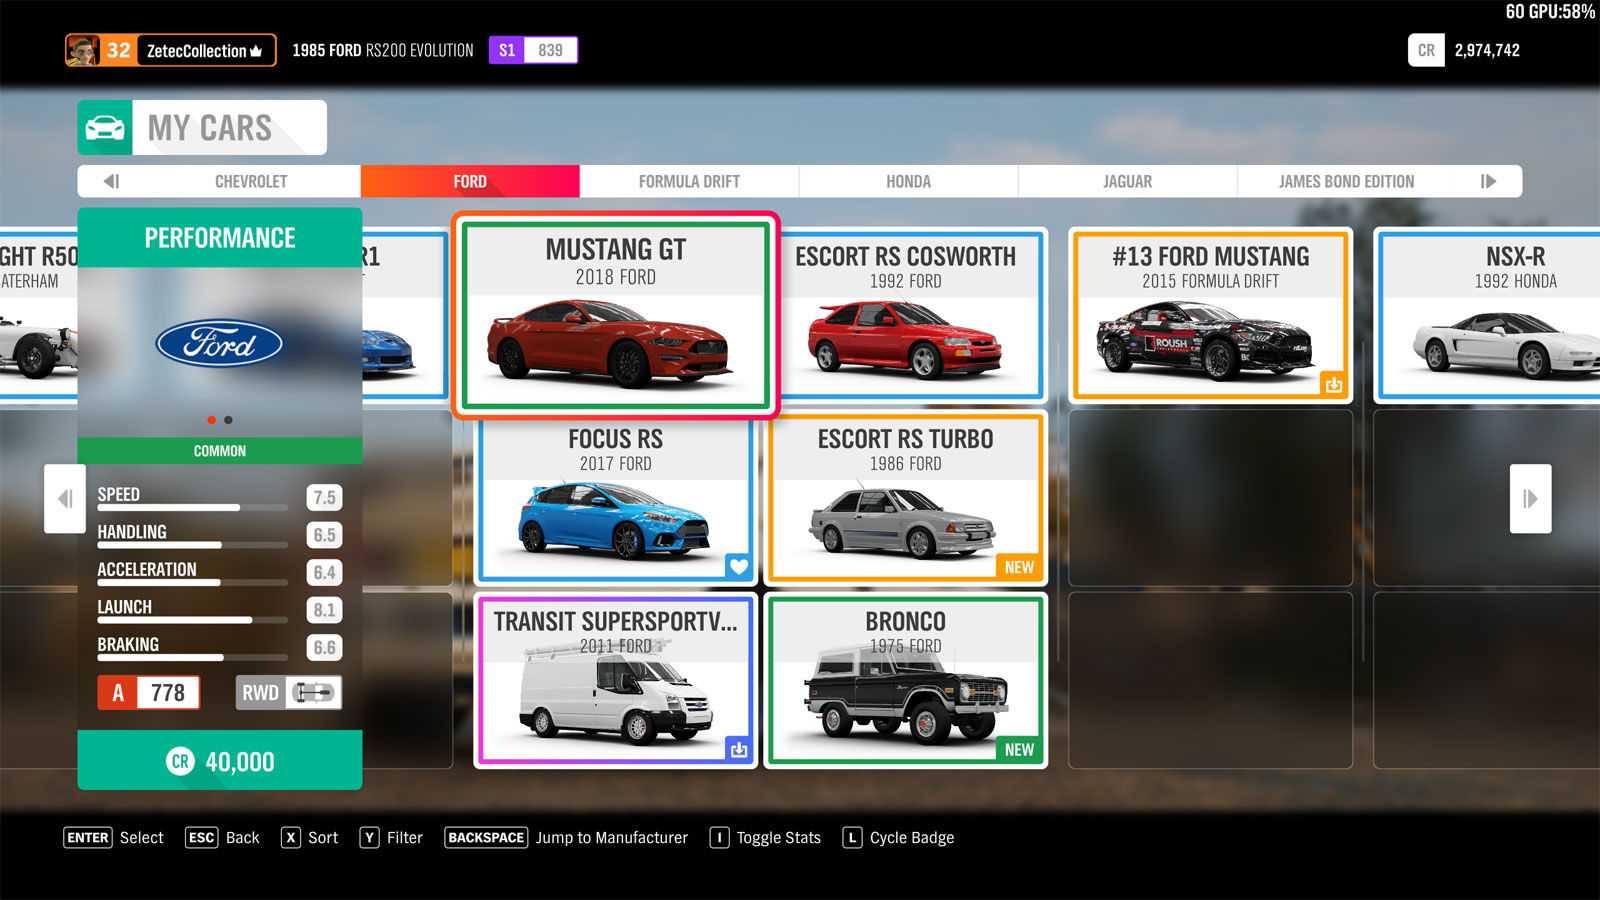 В этом гайде вы узнаете основную информацию об автомобилях в Forza Horizon 4 Мы расскажем вам, на что следует обратить внимание при выборе машины